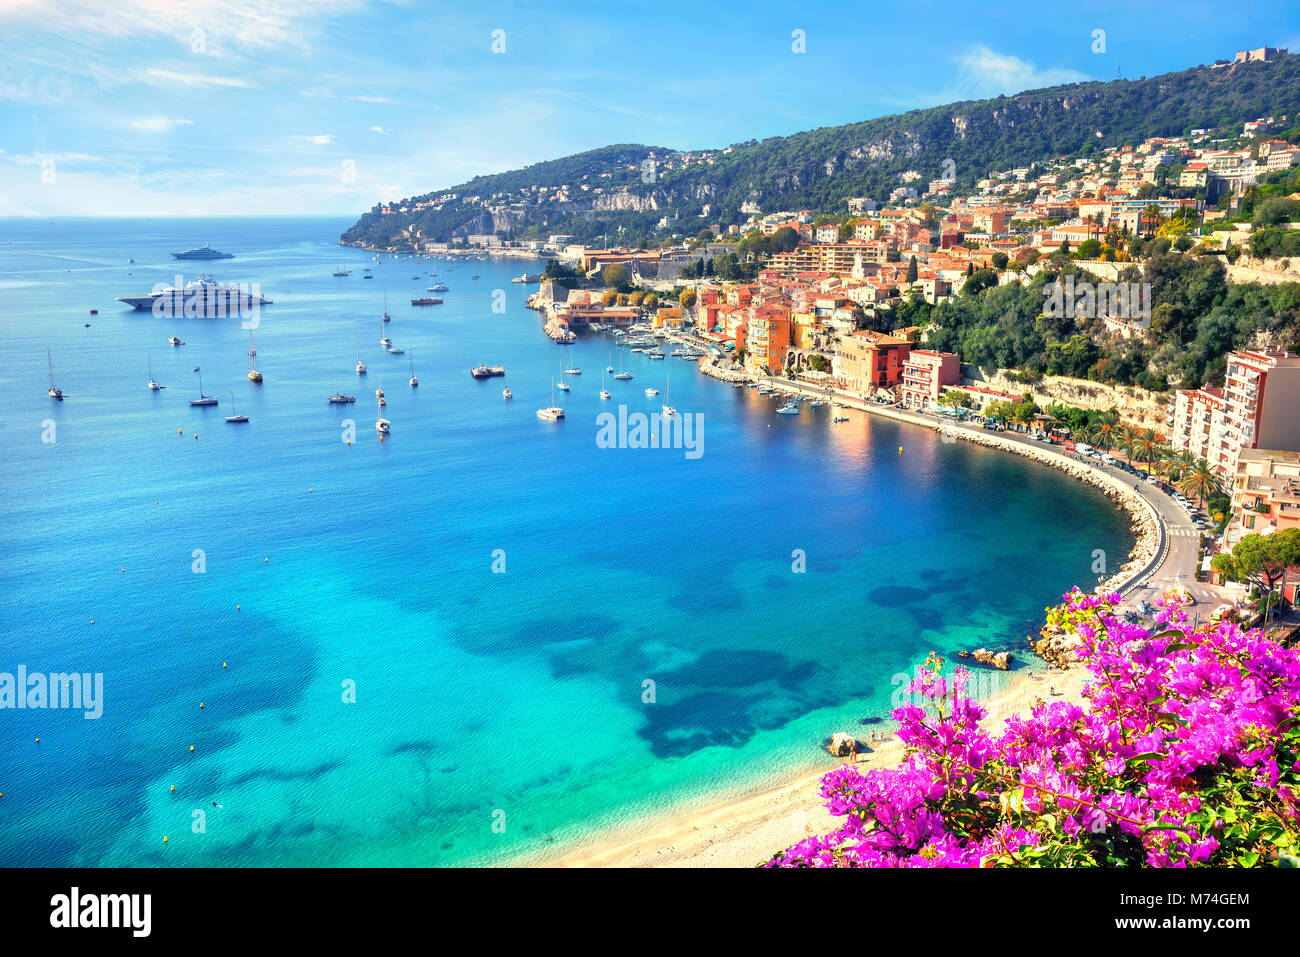 Luxury Resort von Villefranche-sur-Mer. Französische Riviera, Cote d'Azur, Frankreich Stockfoto